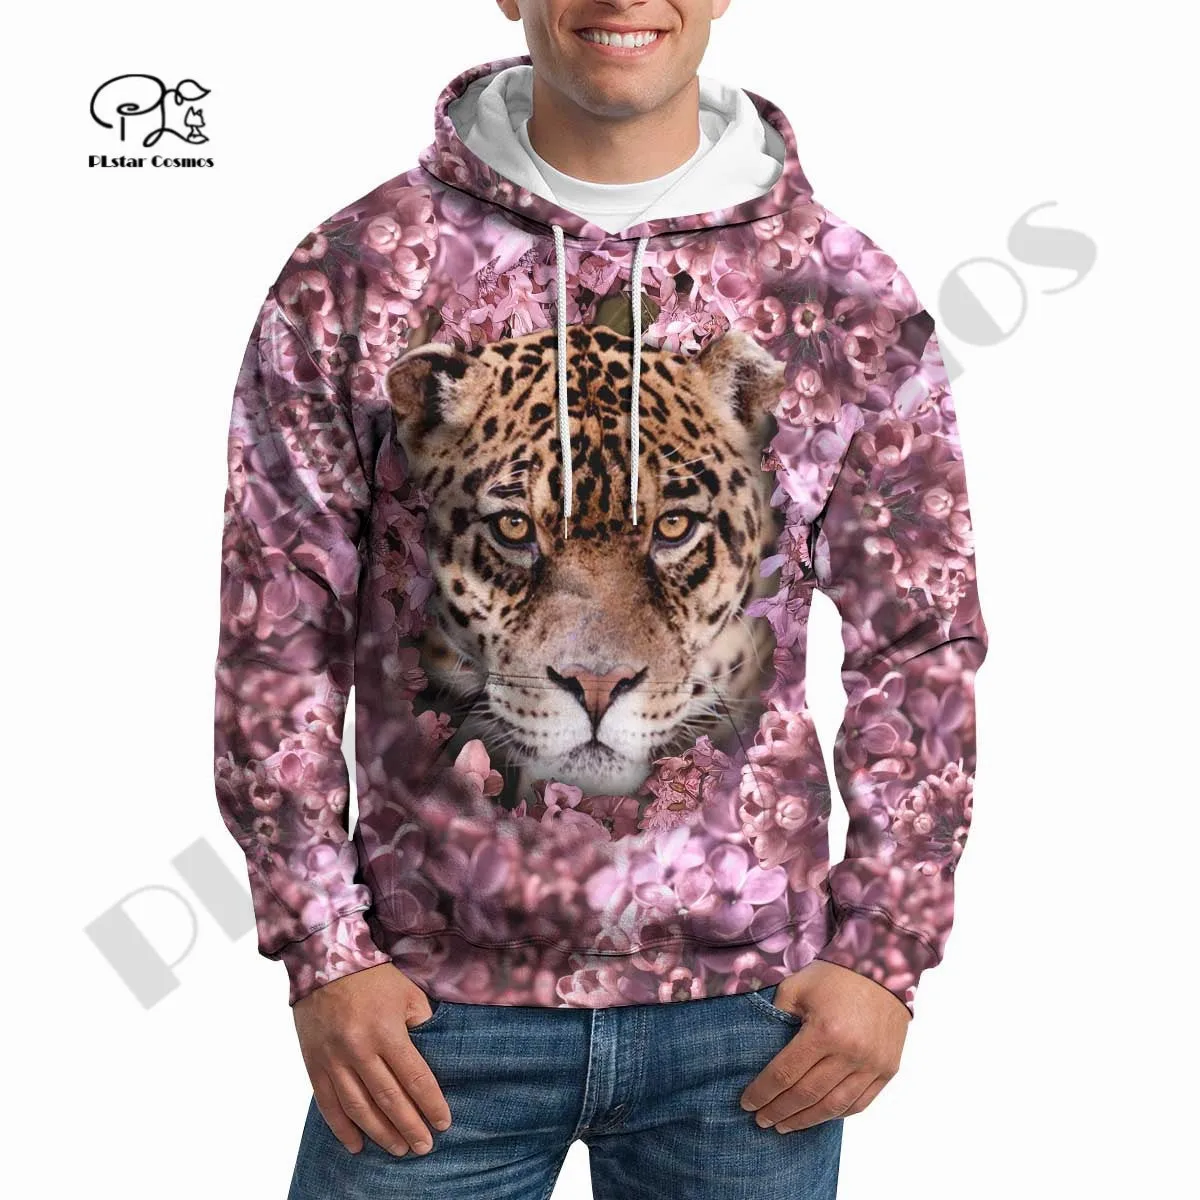 Новинка, пуловер PLstar Cosmos в стиле Харадзюку с леопардовым рисунком, уникальная уличная одежда премиум-класса, толстовки унисекс, свитшот на молнии